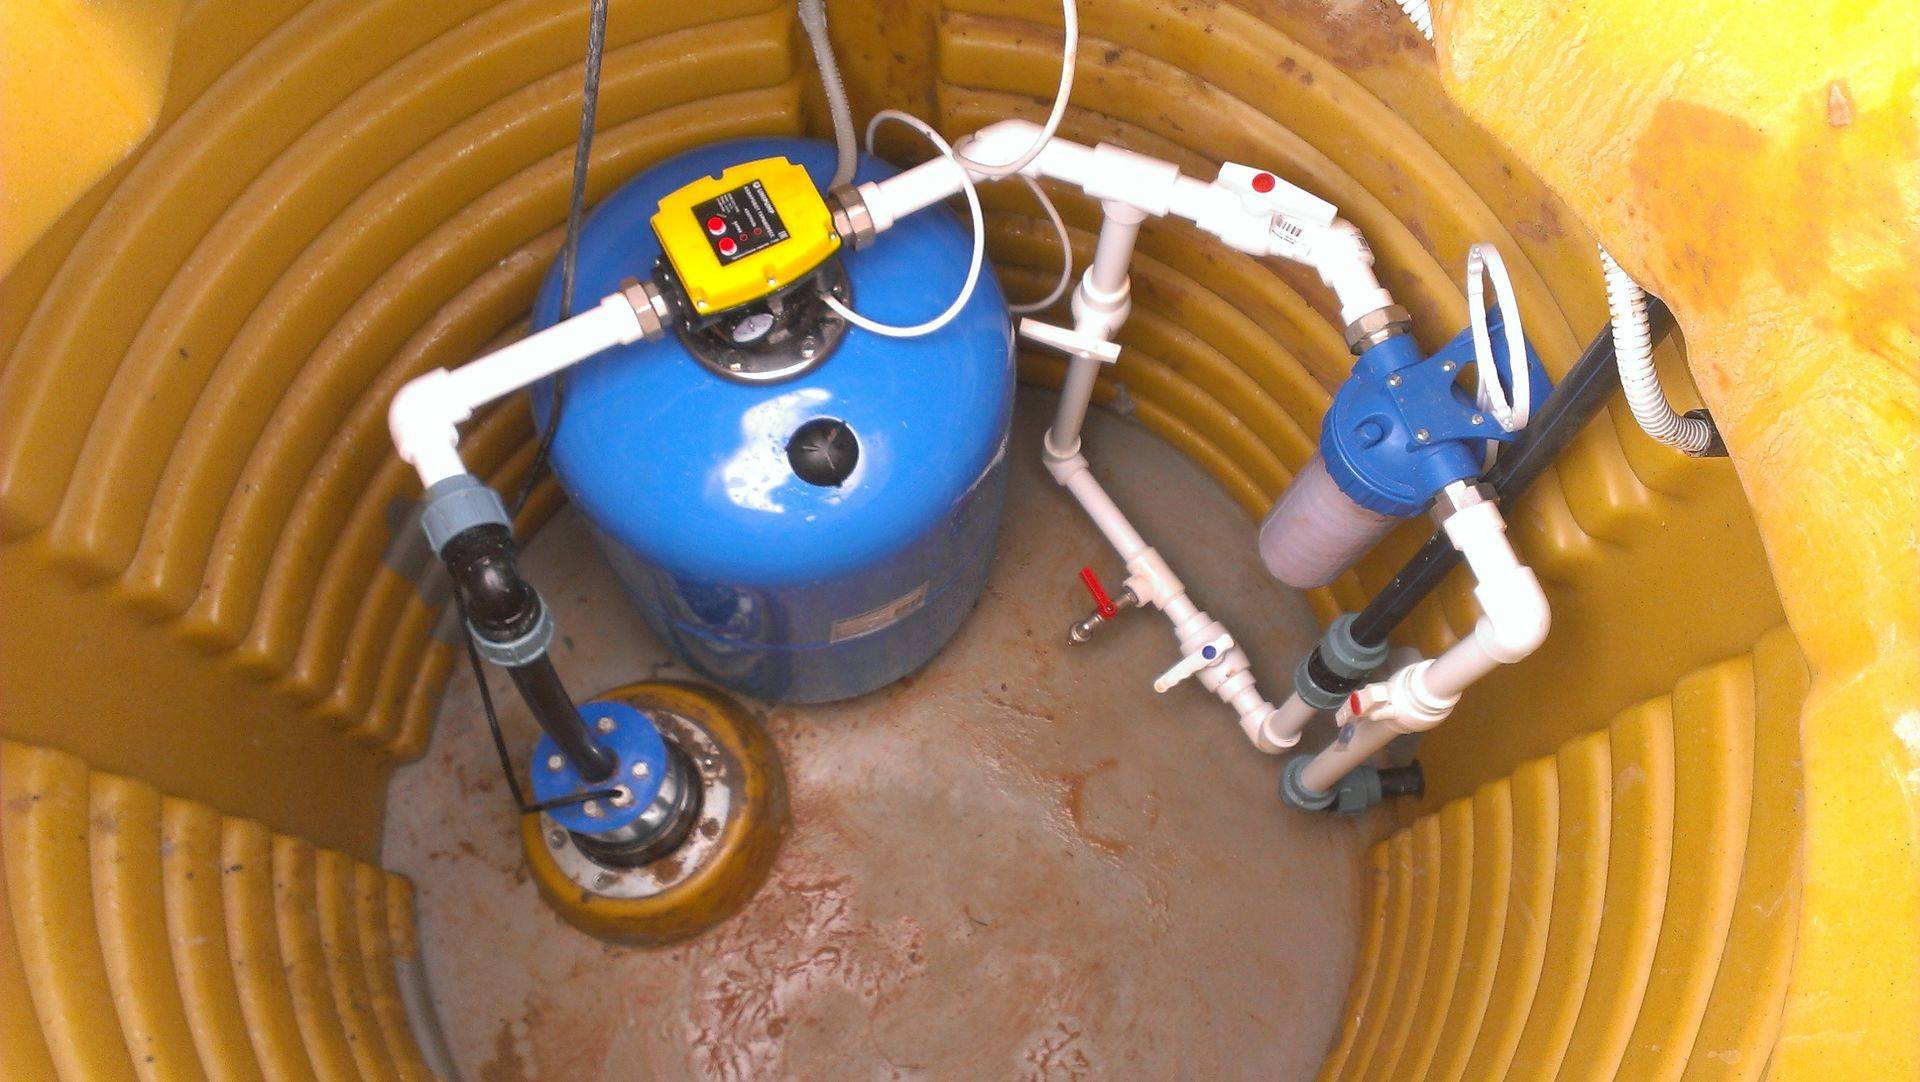 Правила и особенности оборудования скважины под воду